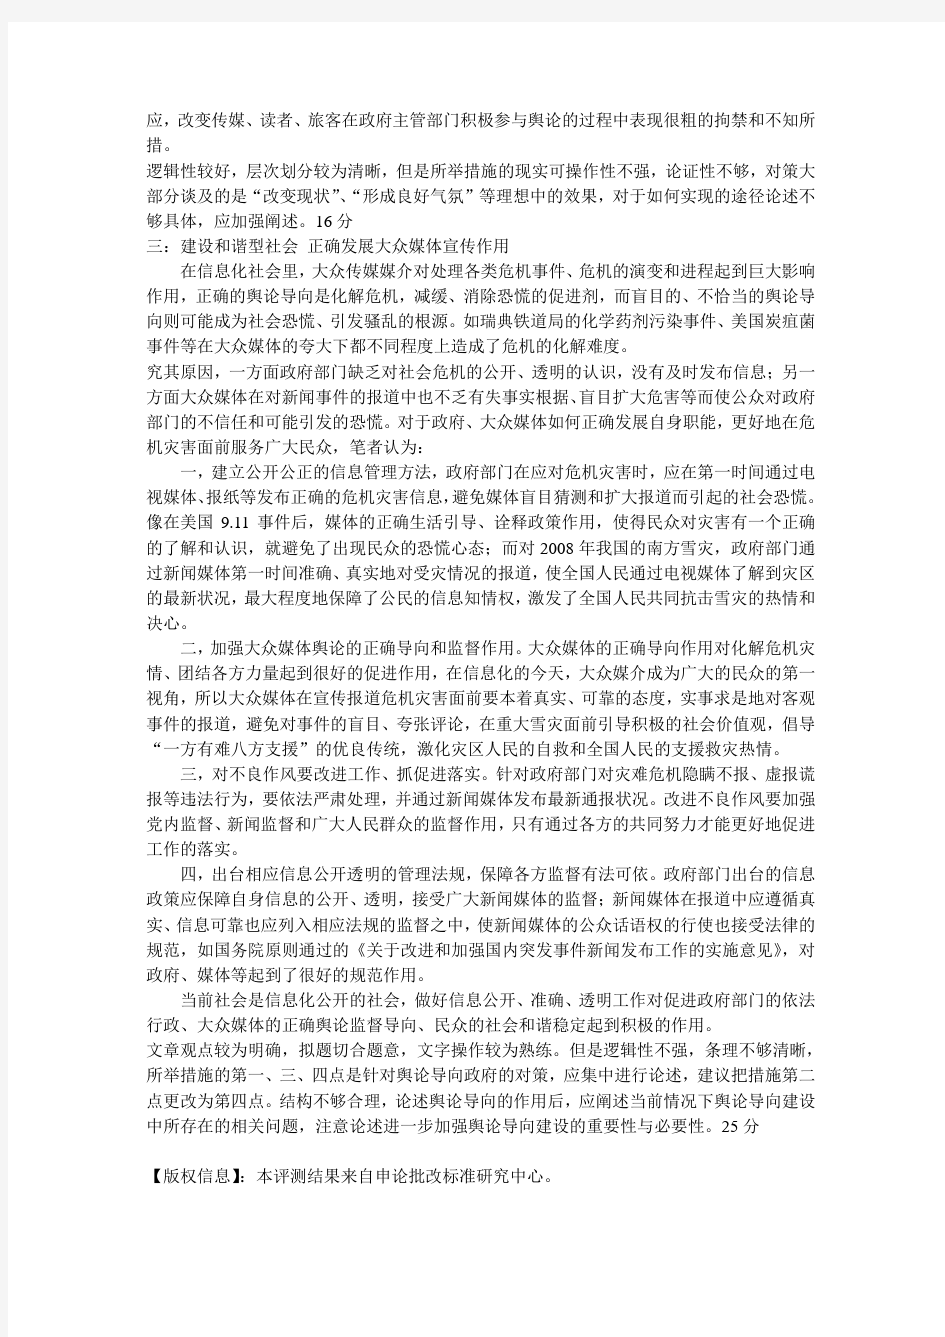 深圳申论批改标准研究中心的机构